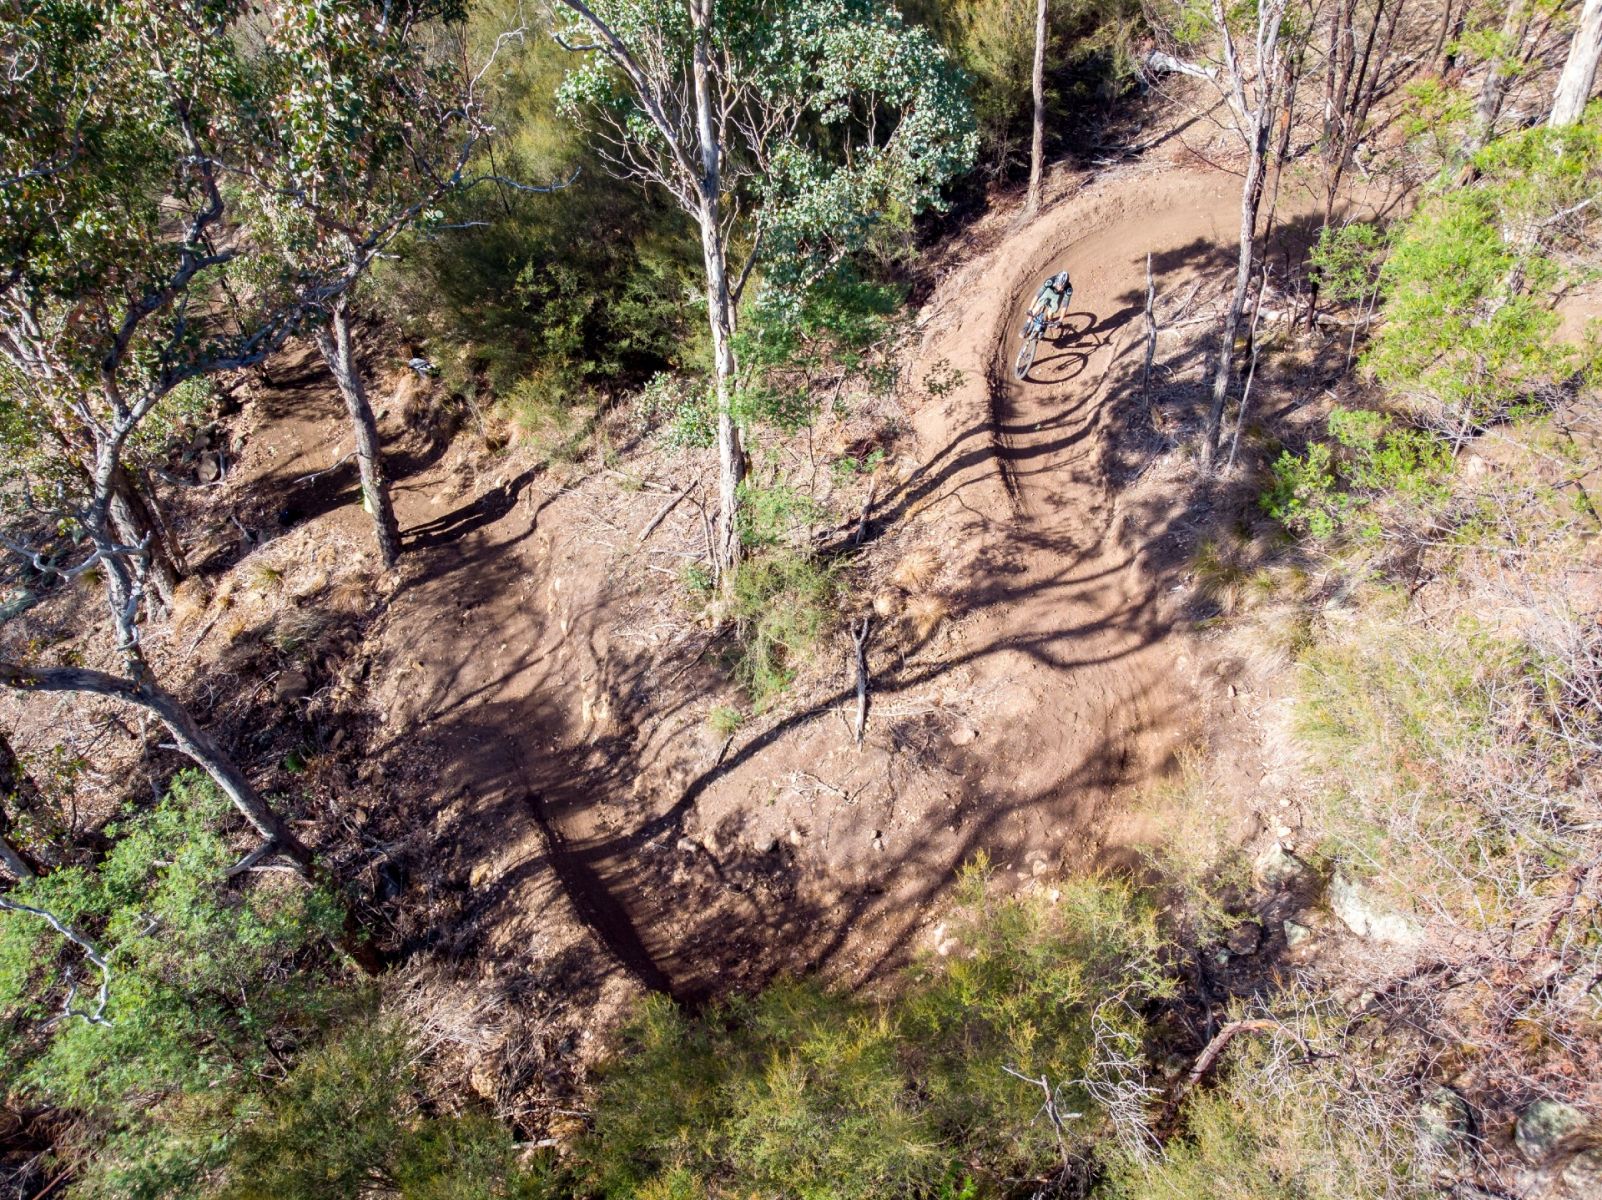 Aerial view of a person mountain biking down a dirt trail